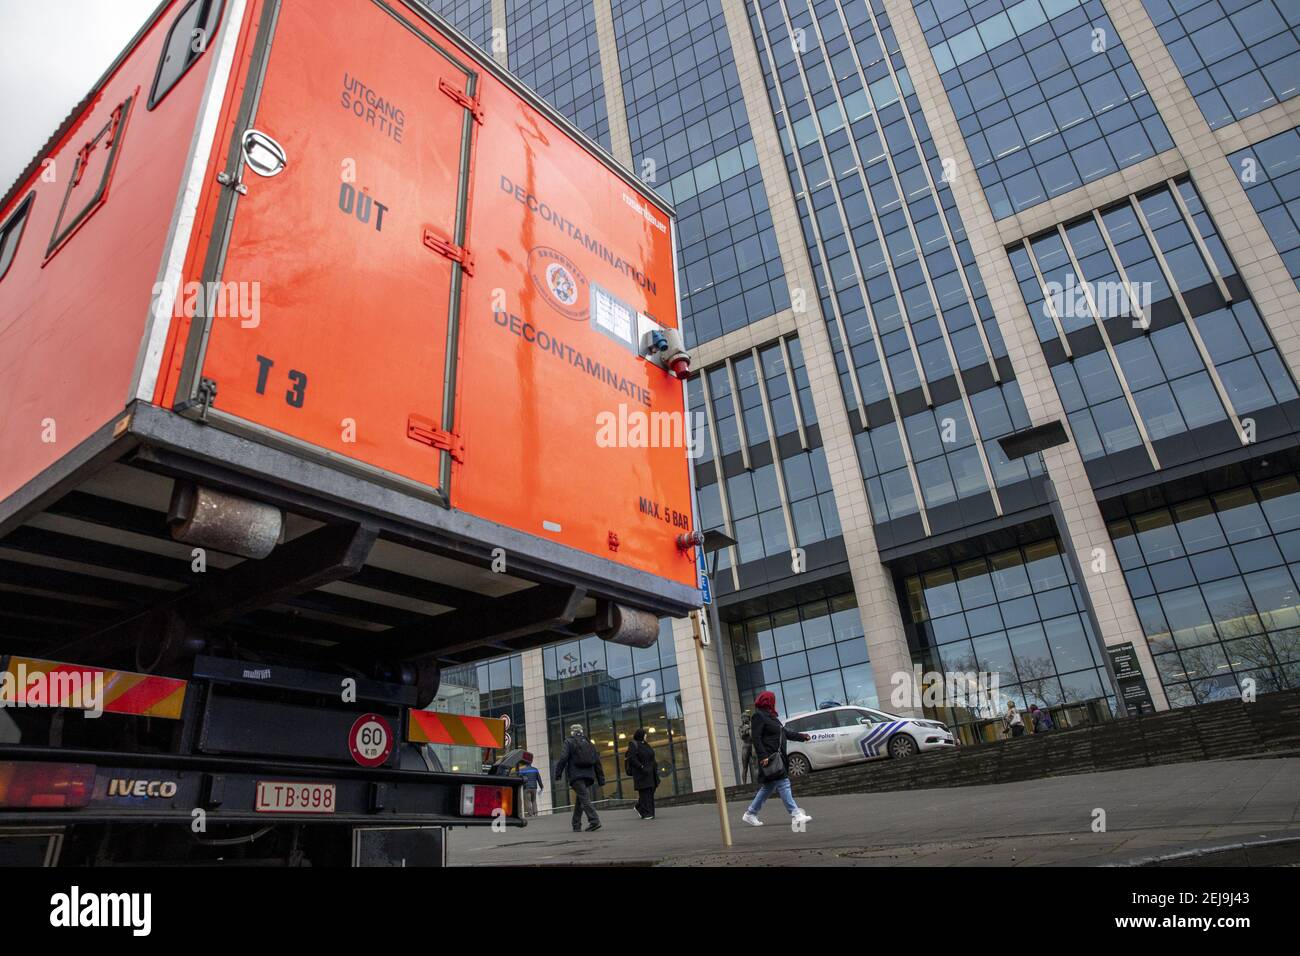 Illustration de l'alarme de l'anthrax a été émise après la découverte d'une  lettre de poudre au ministère Clarenval dans la Tour des Finances,  Bruxelles, vendredi 10 janvier 2020. PHOTO DE BELGA HATIM